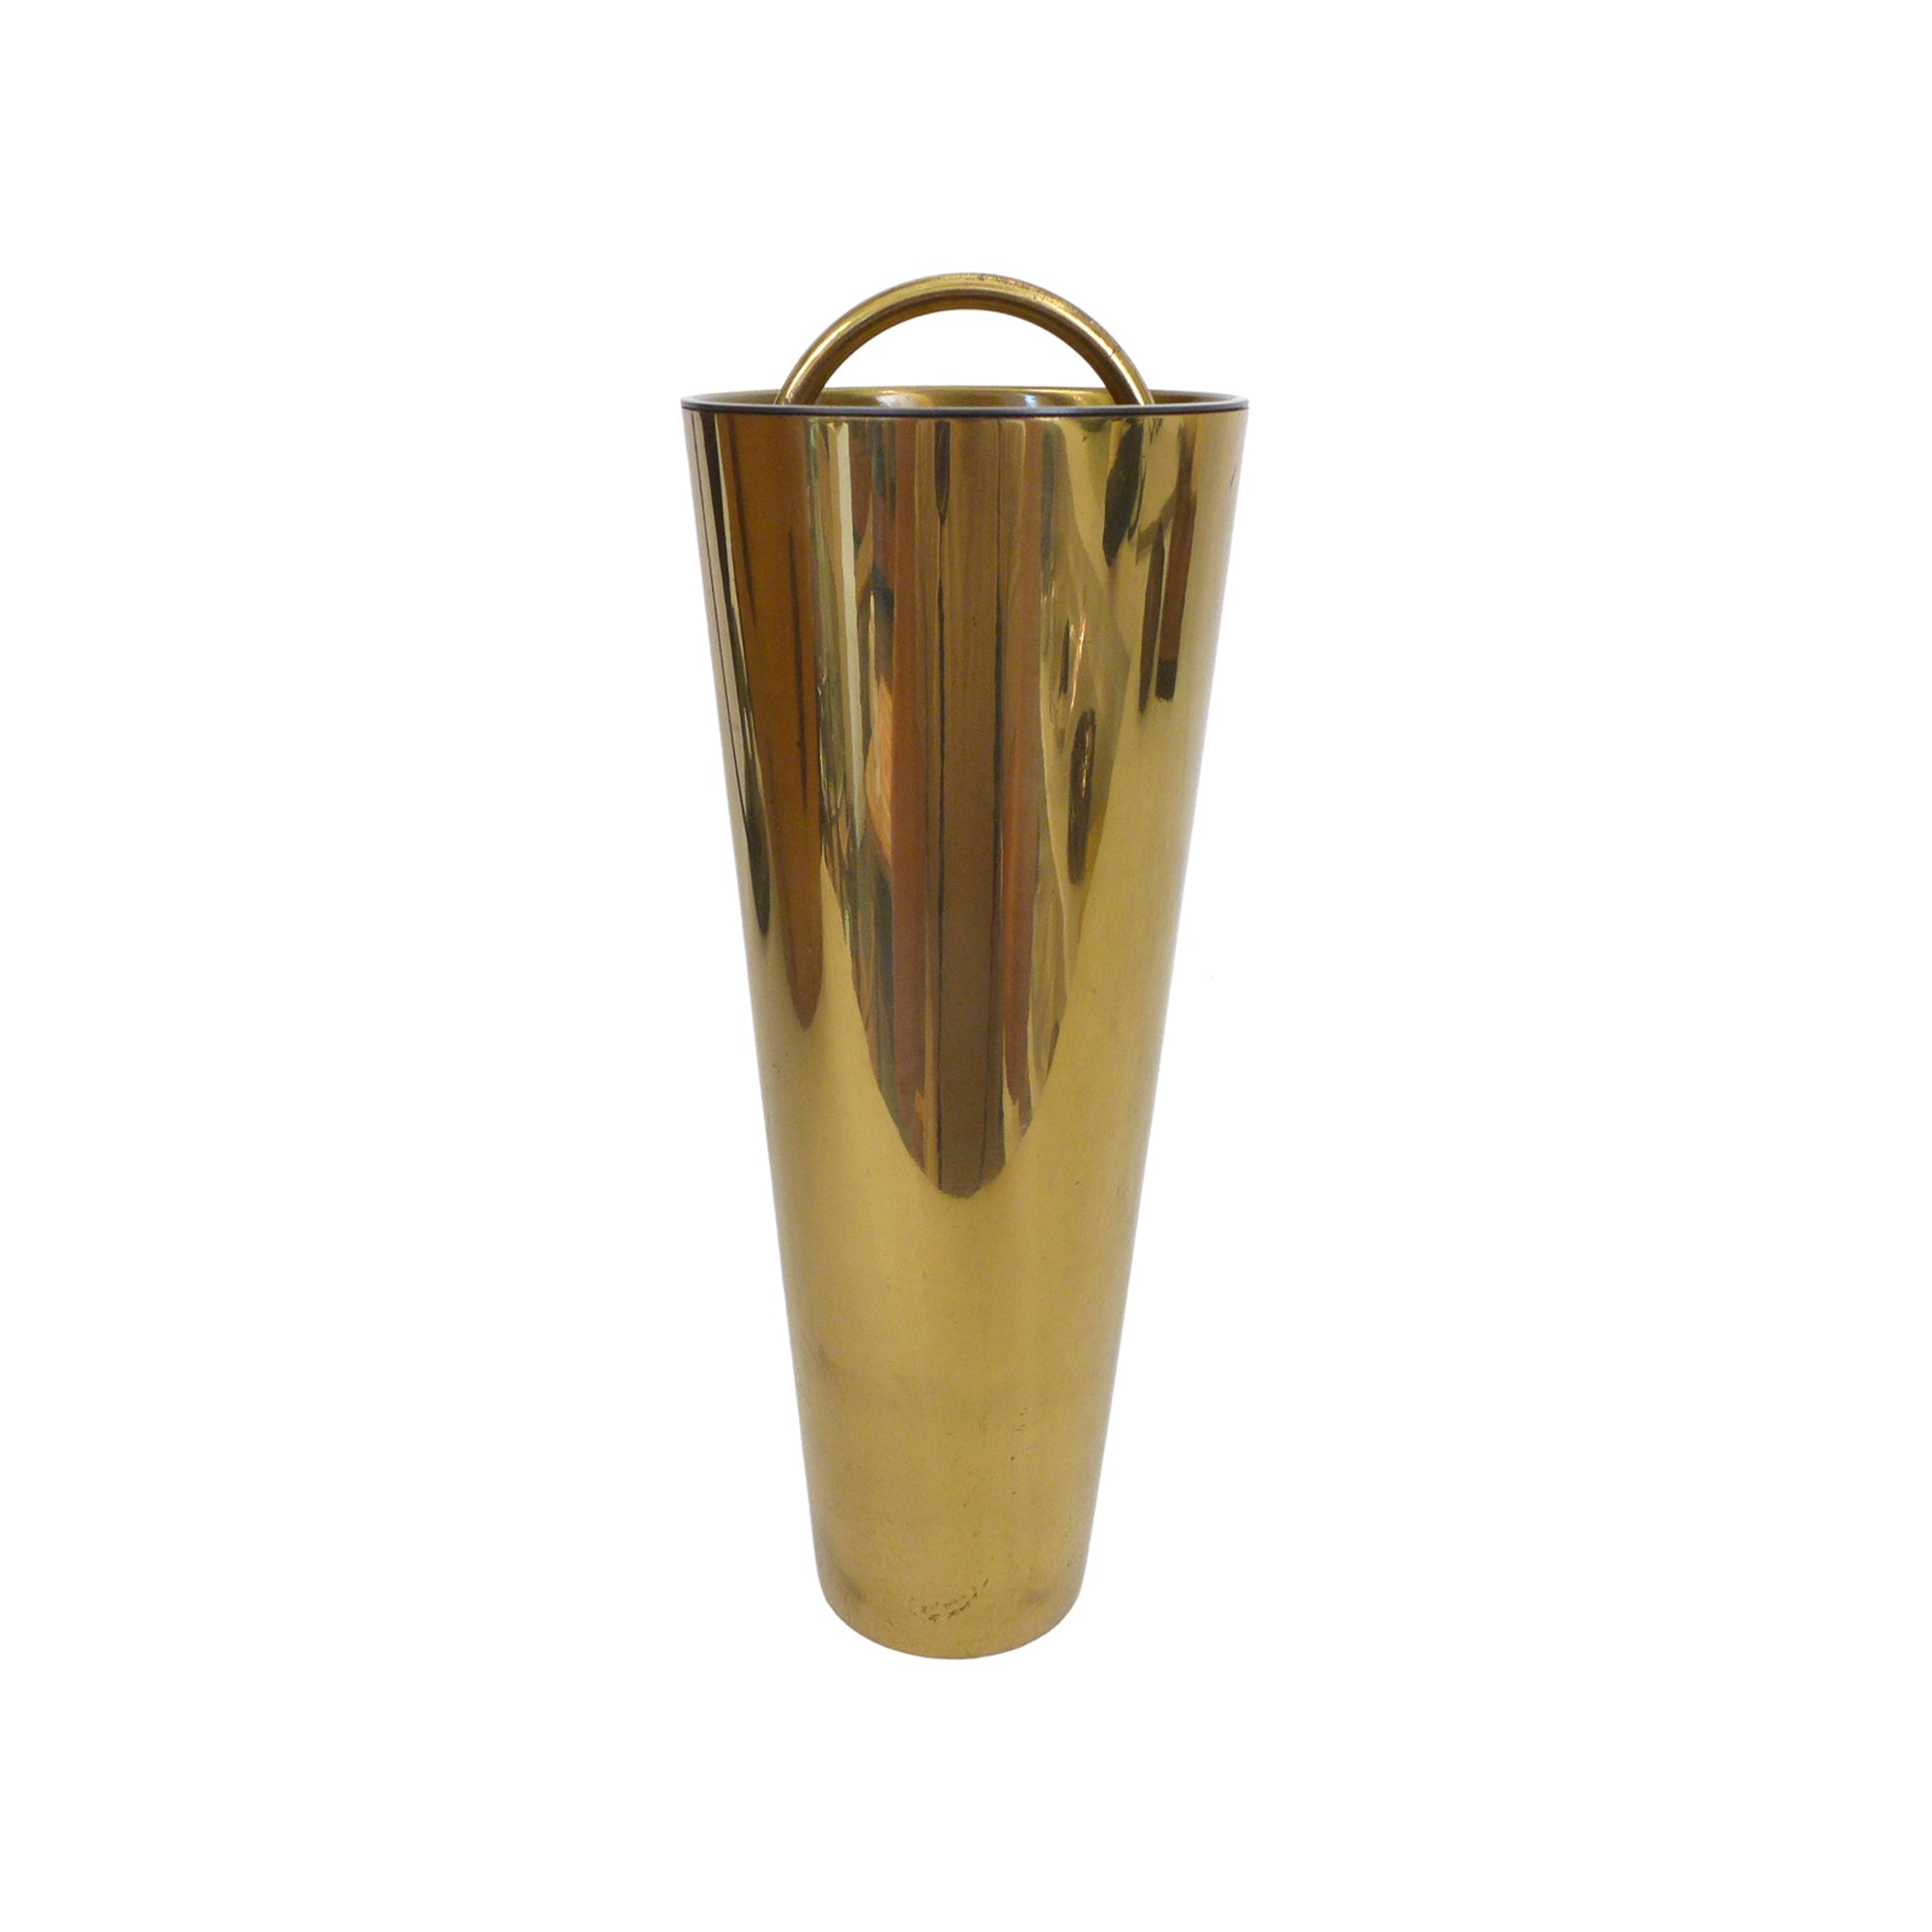 Italian Modernist Brass Cocktail Shaker